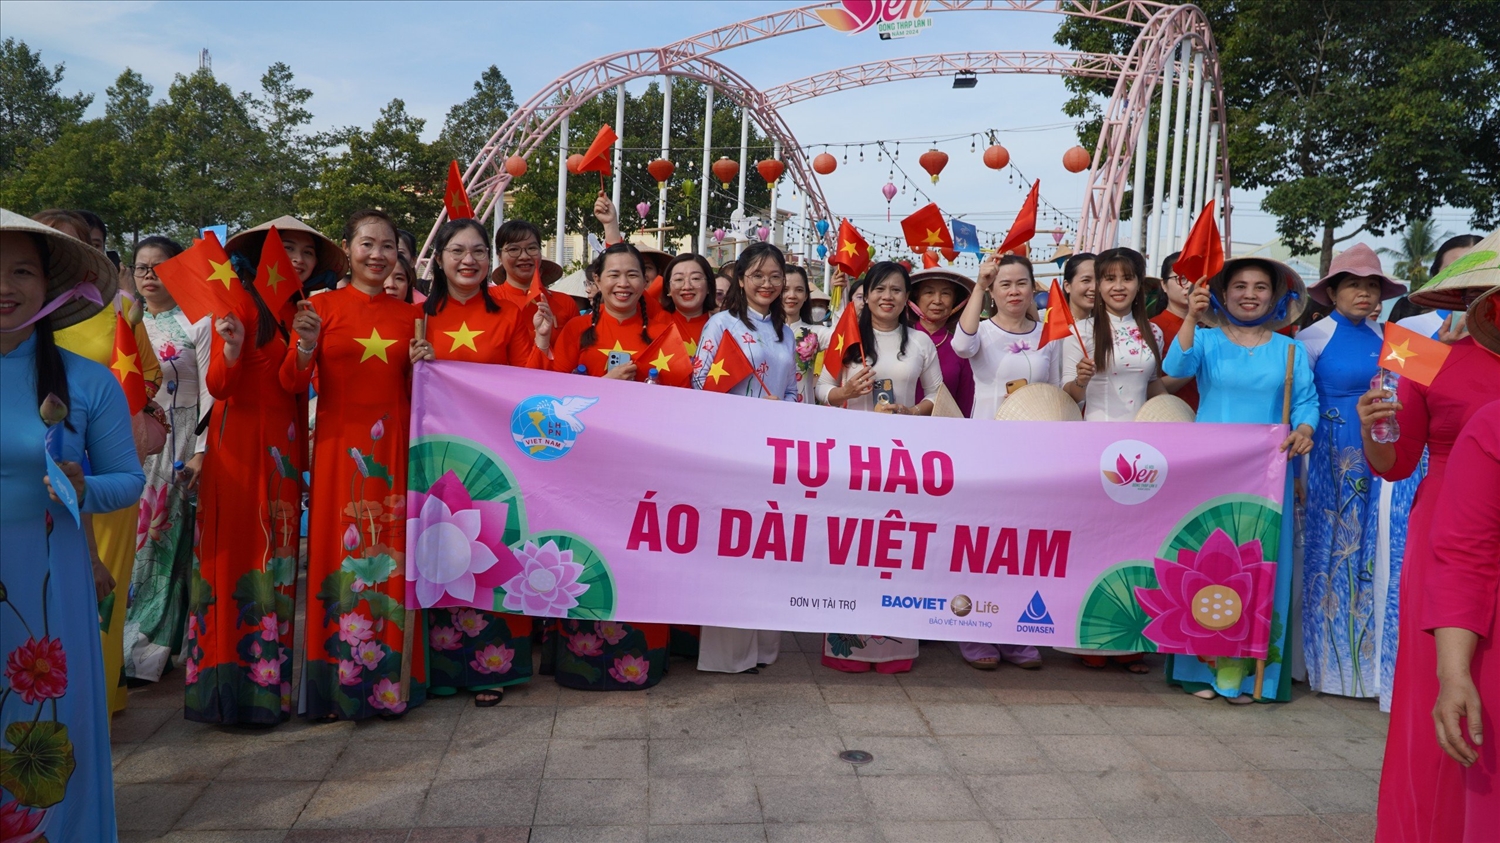 Hoạt động này cũng nhằm tôn vinh áo dài Việt Nam và vẻ đẹp của phụ nữ trong tà áo dài truyền thống